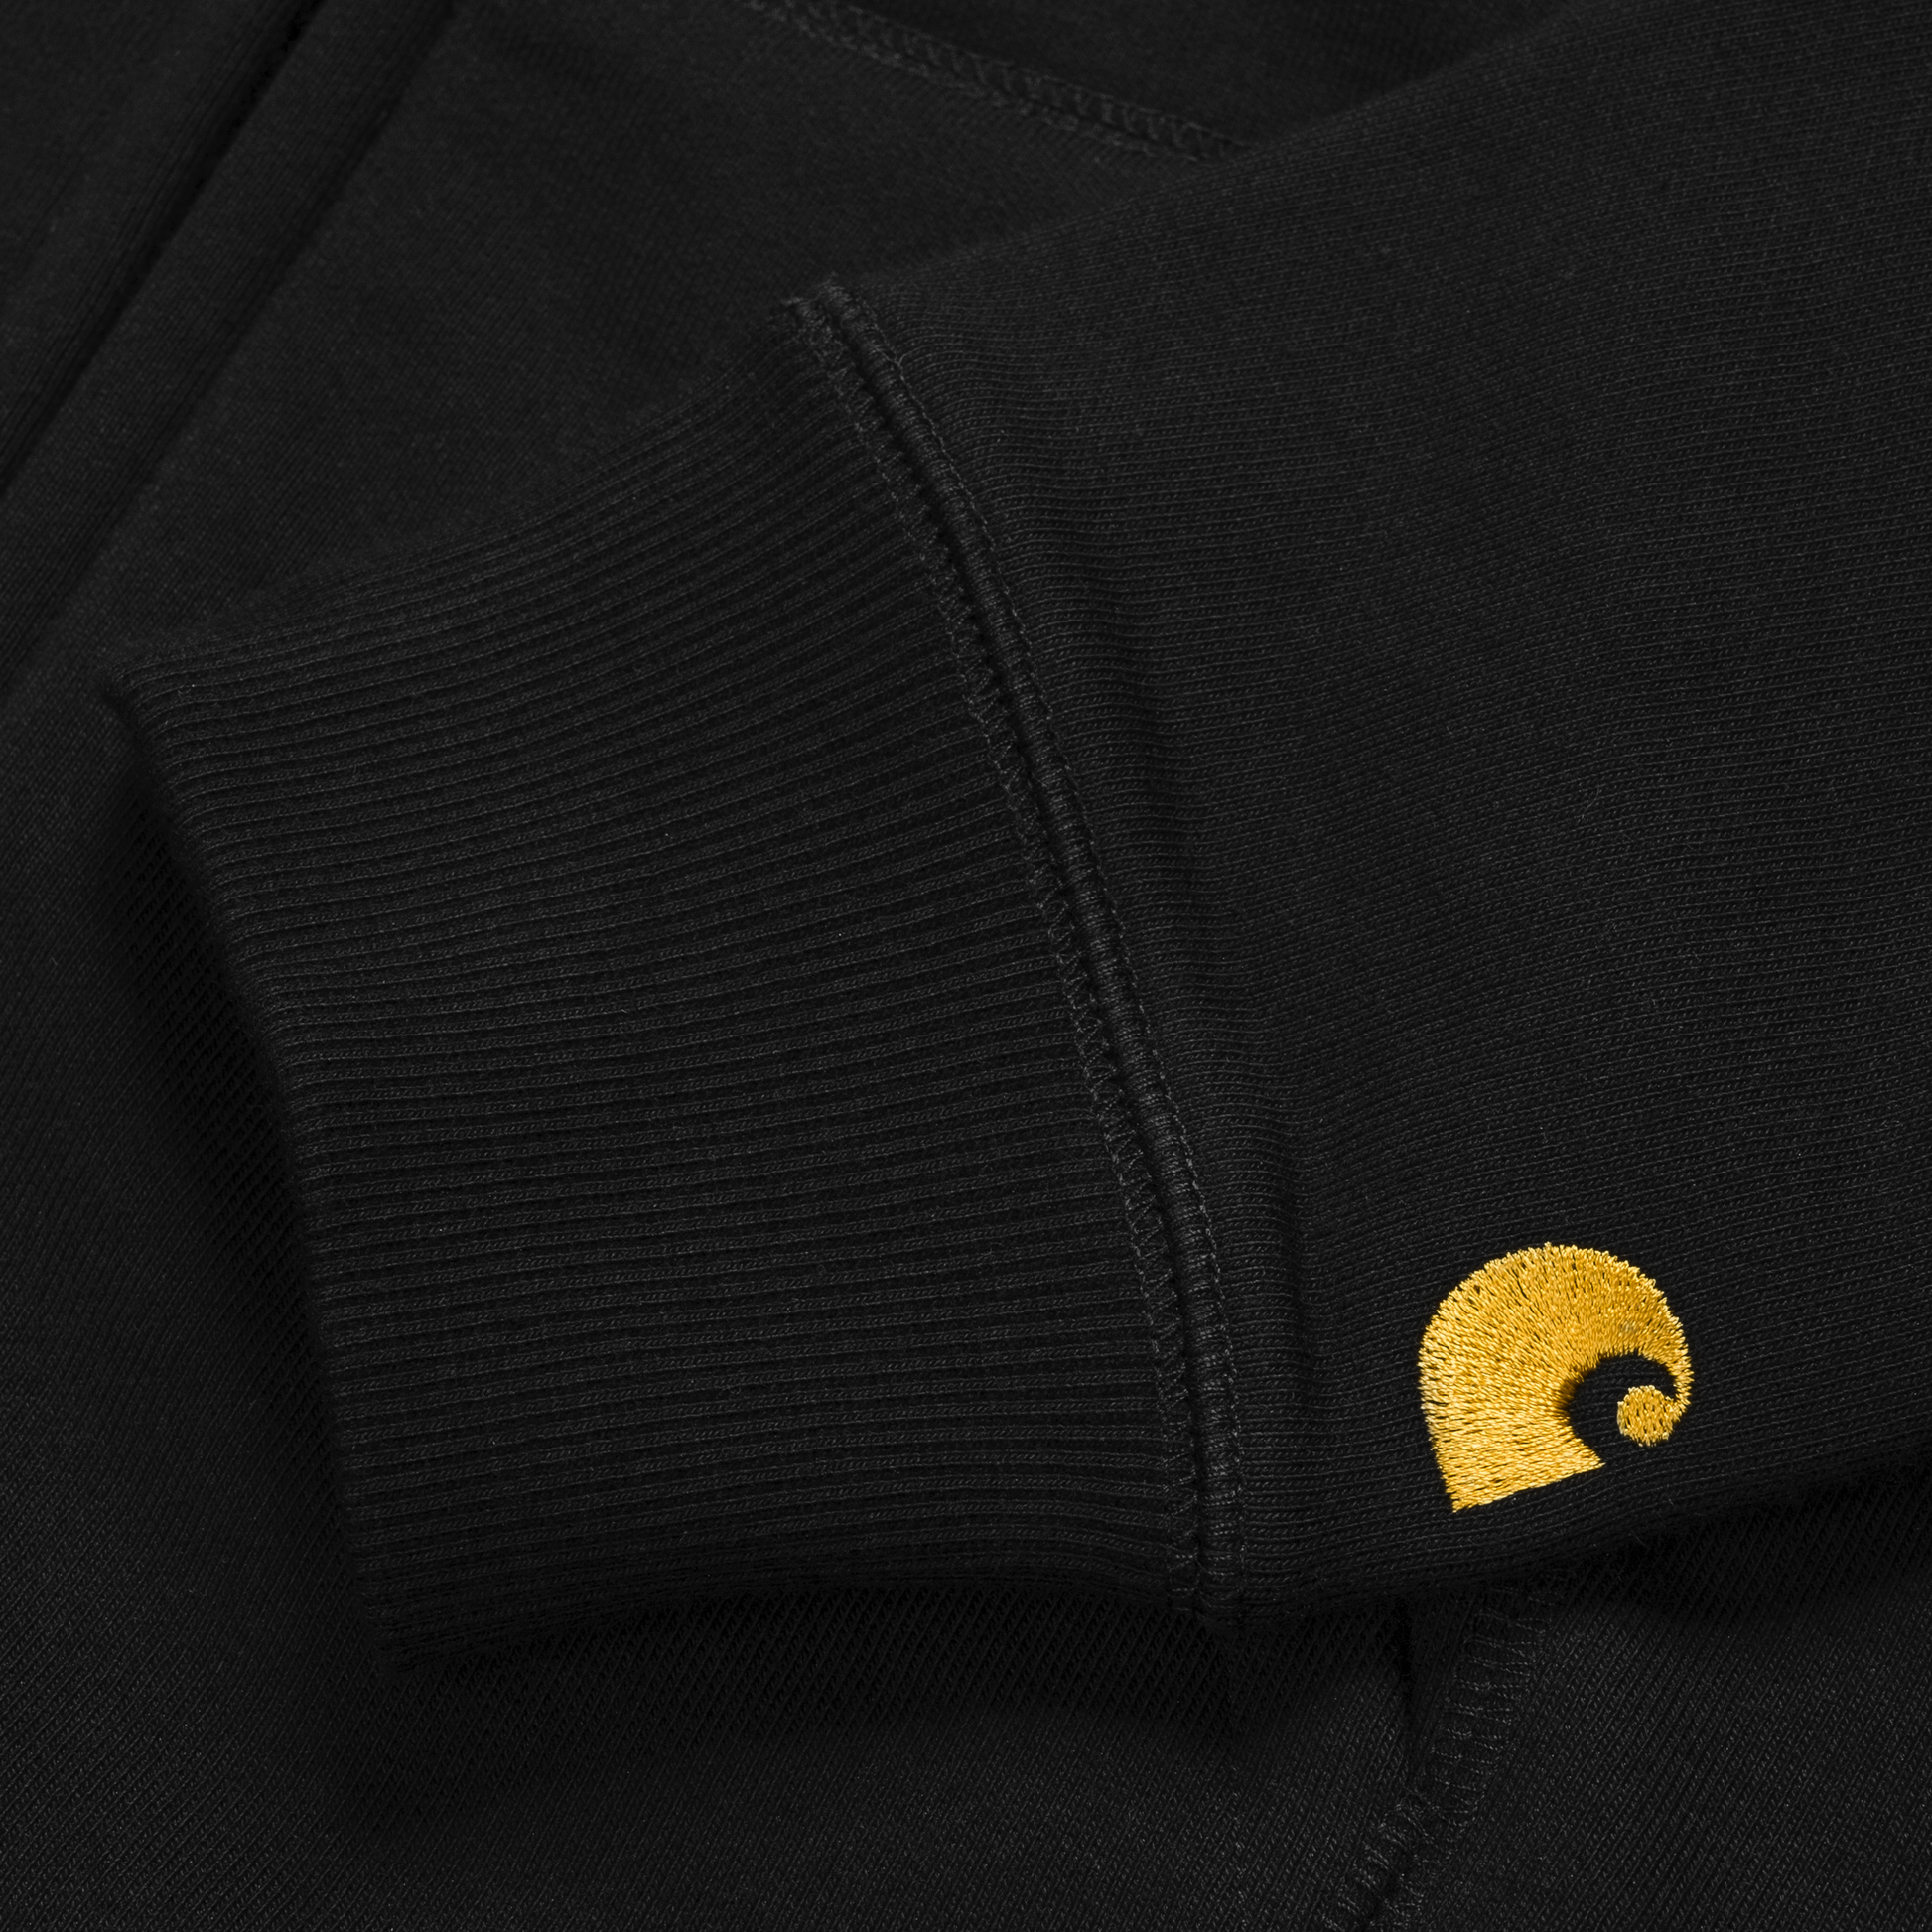 Carhartt WIP Hooded Chase Jacket em preto com logo bordado na manga em dourado. Foto de detalhe do logo bordado na manga.